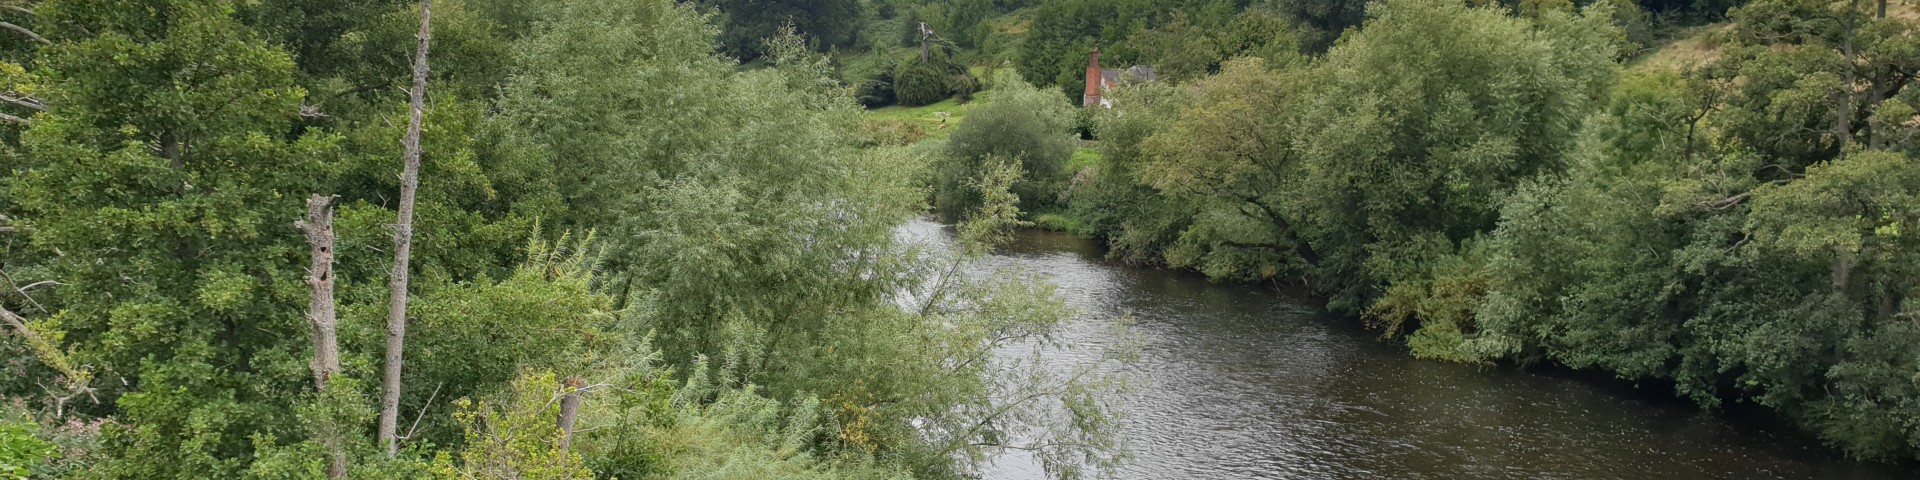 The River Wye at Bridge Sollars